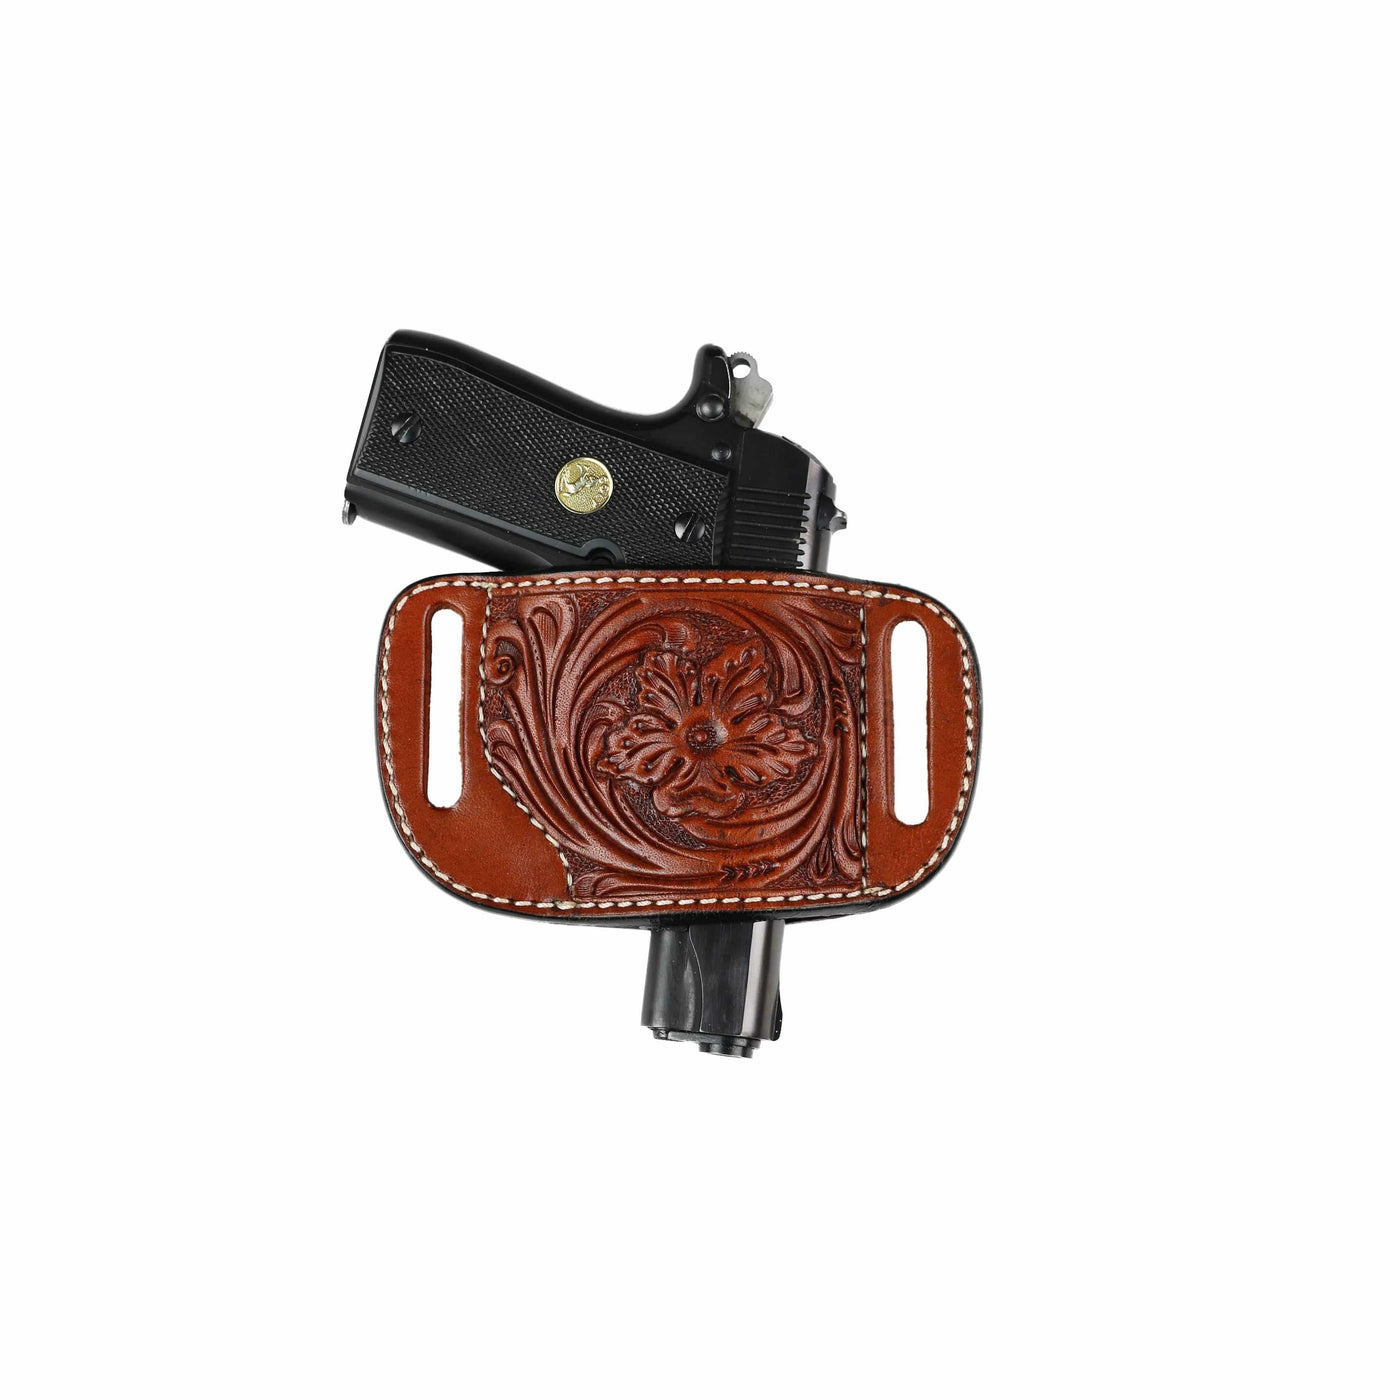 High Caliber Gun compact leather belt holster case